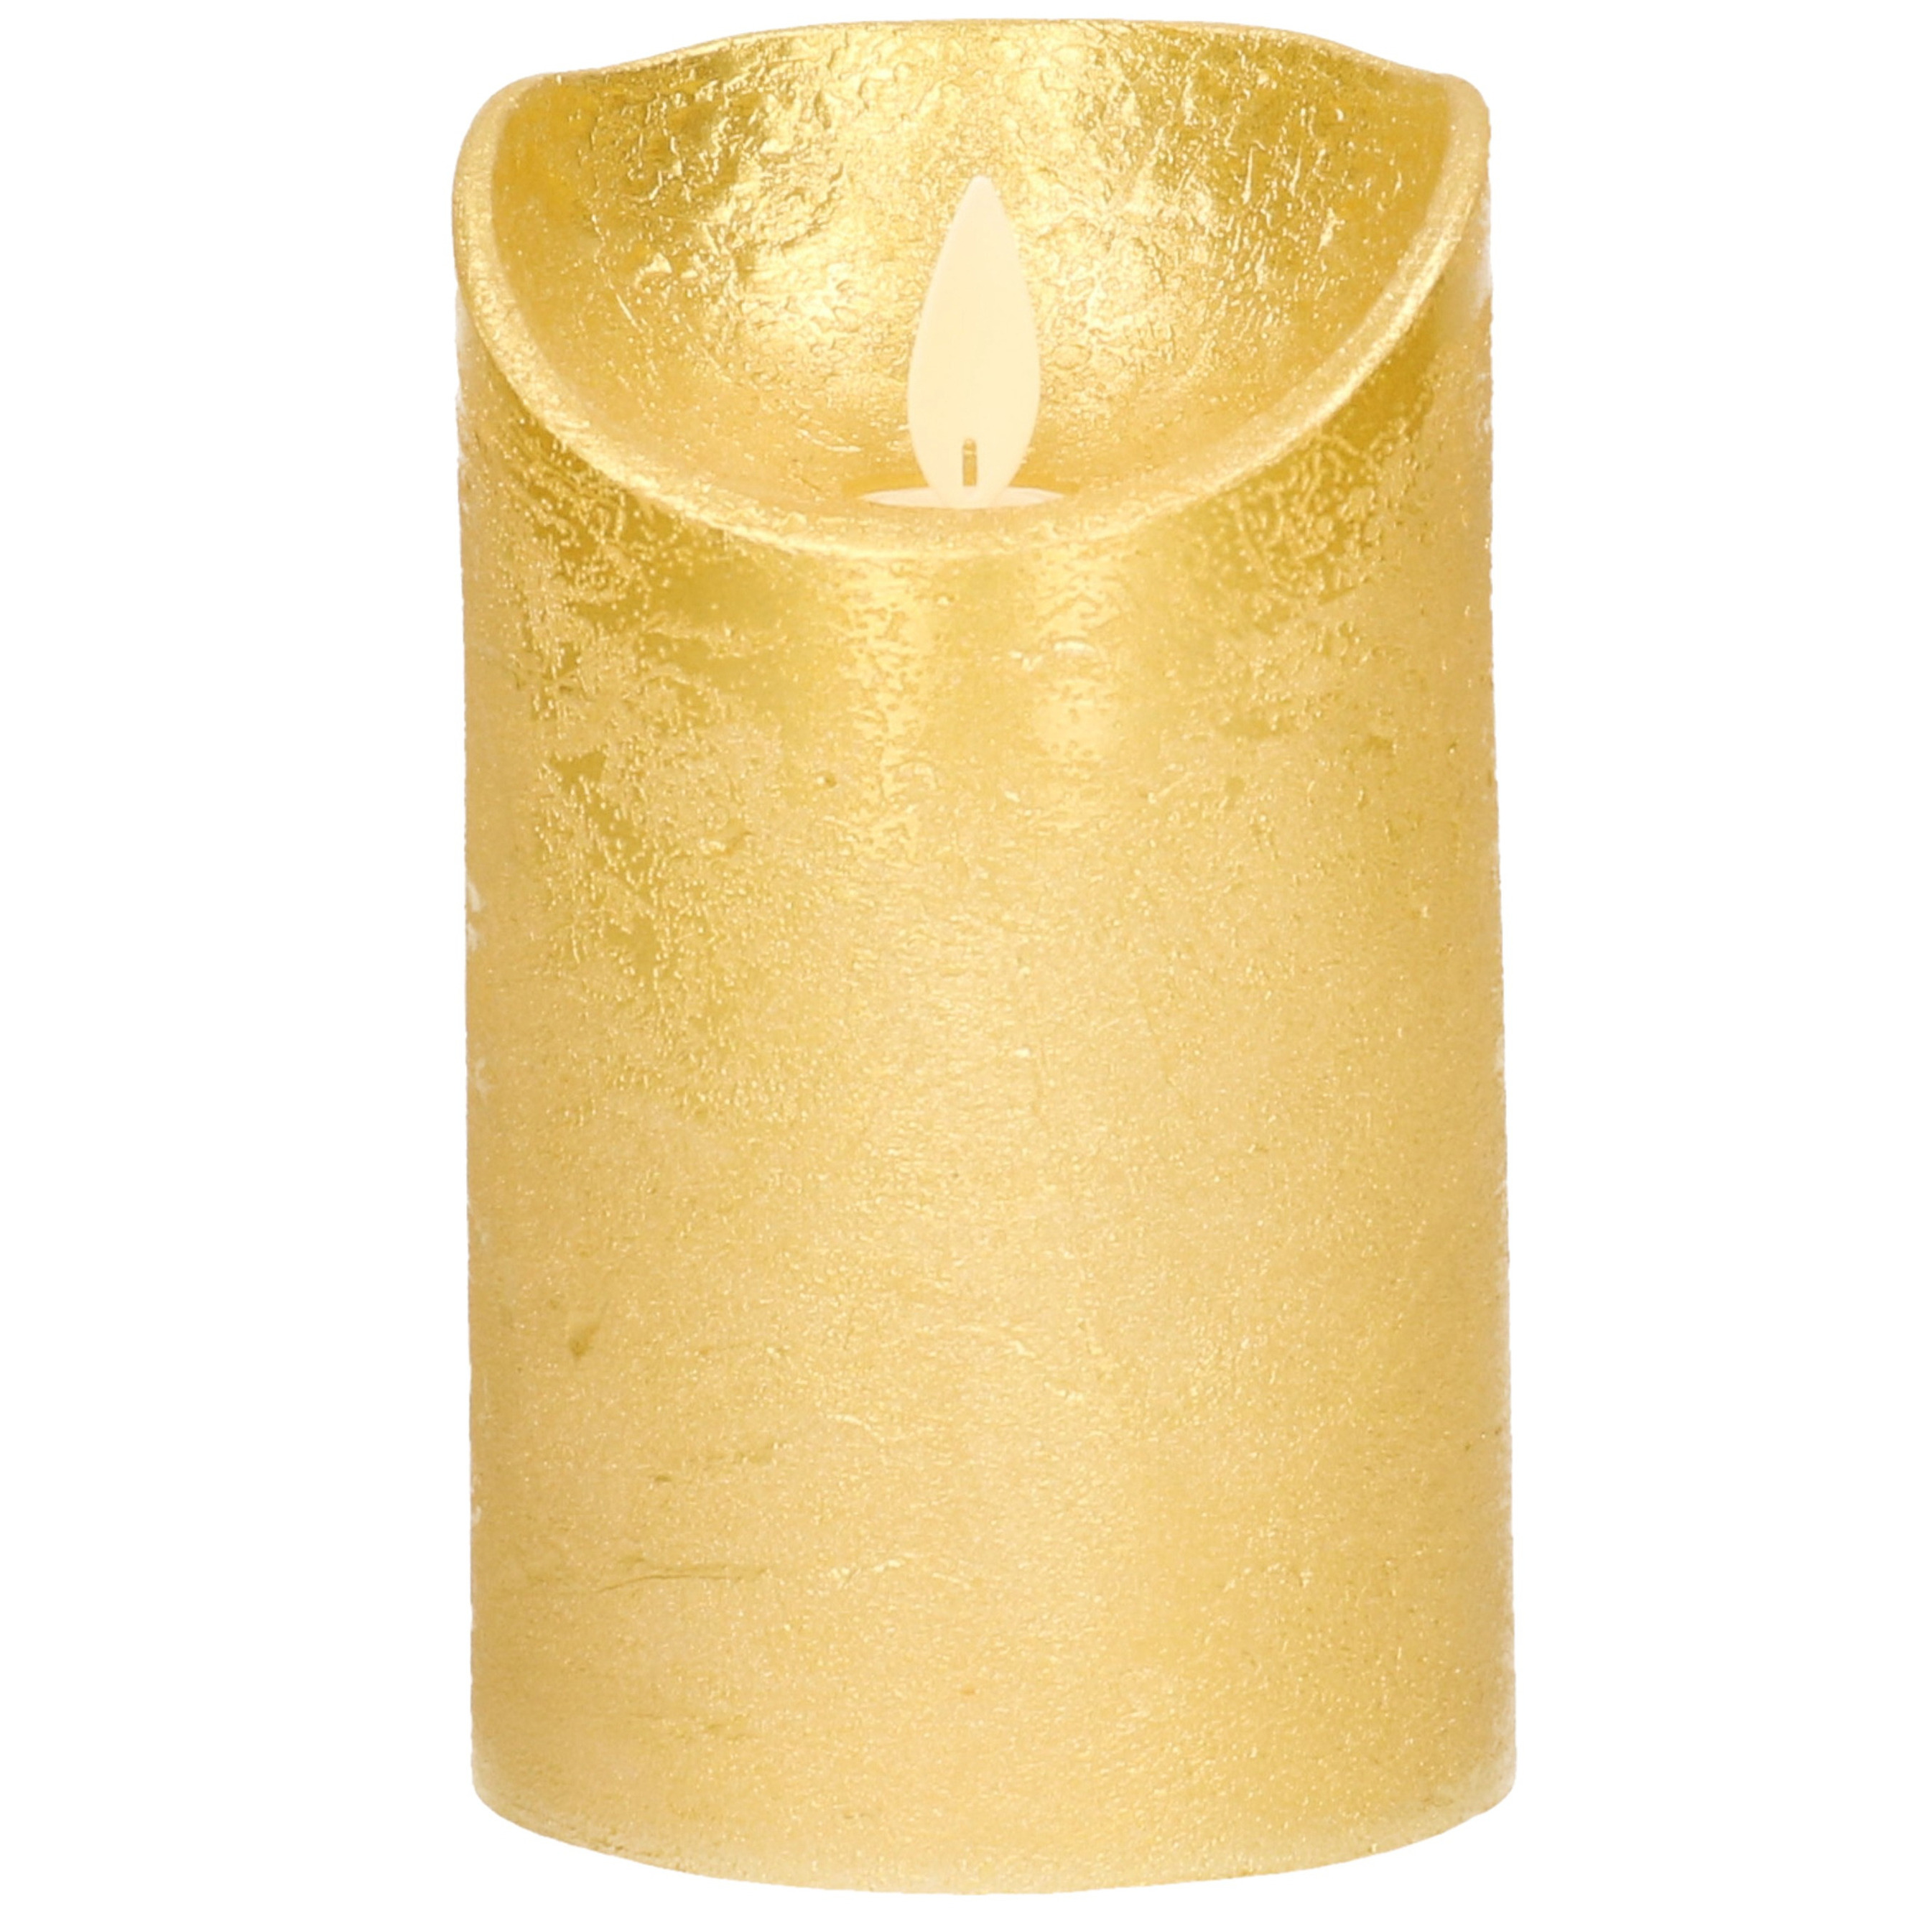 1x Gouden LED kaarsen-stompkaarsen met bewegende vlam 12,5 cm